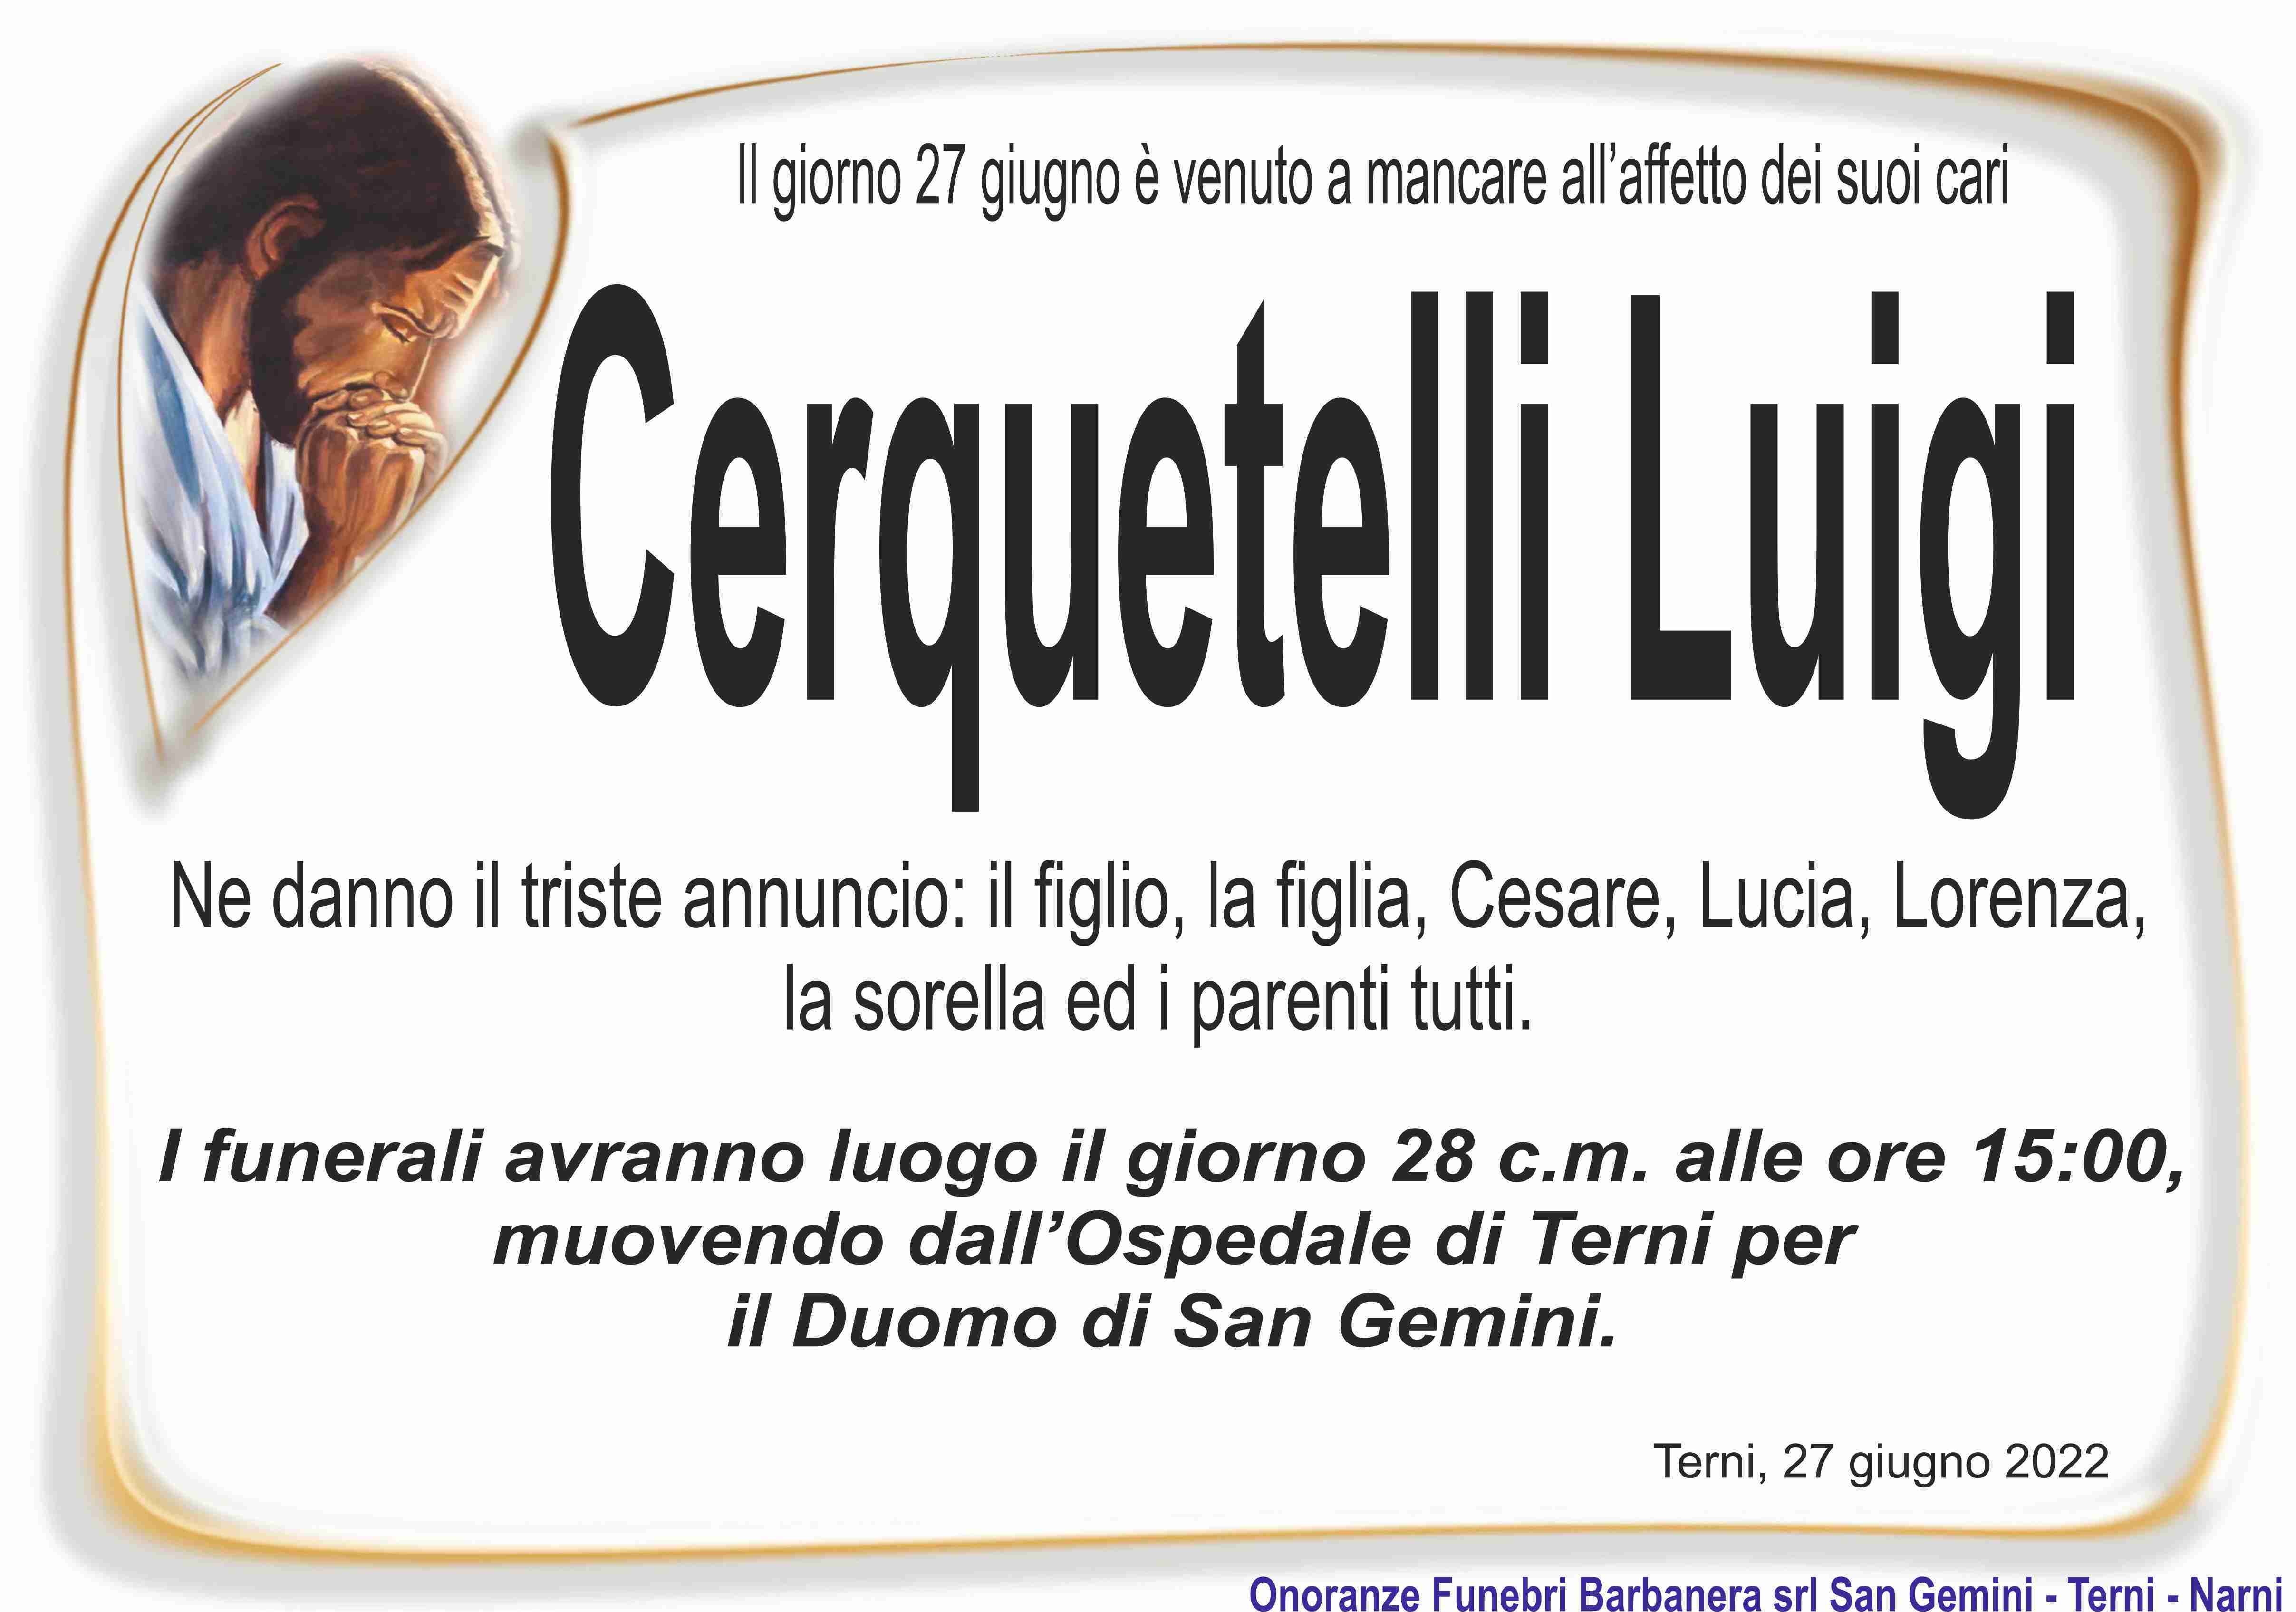 Luigi Cerquetelli